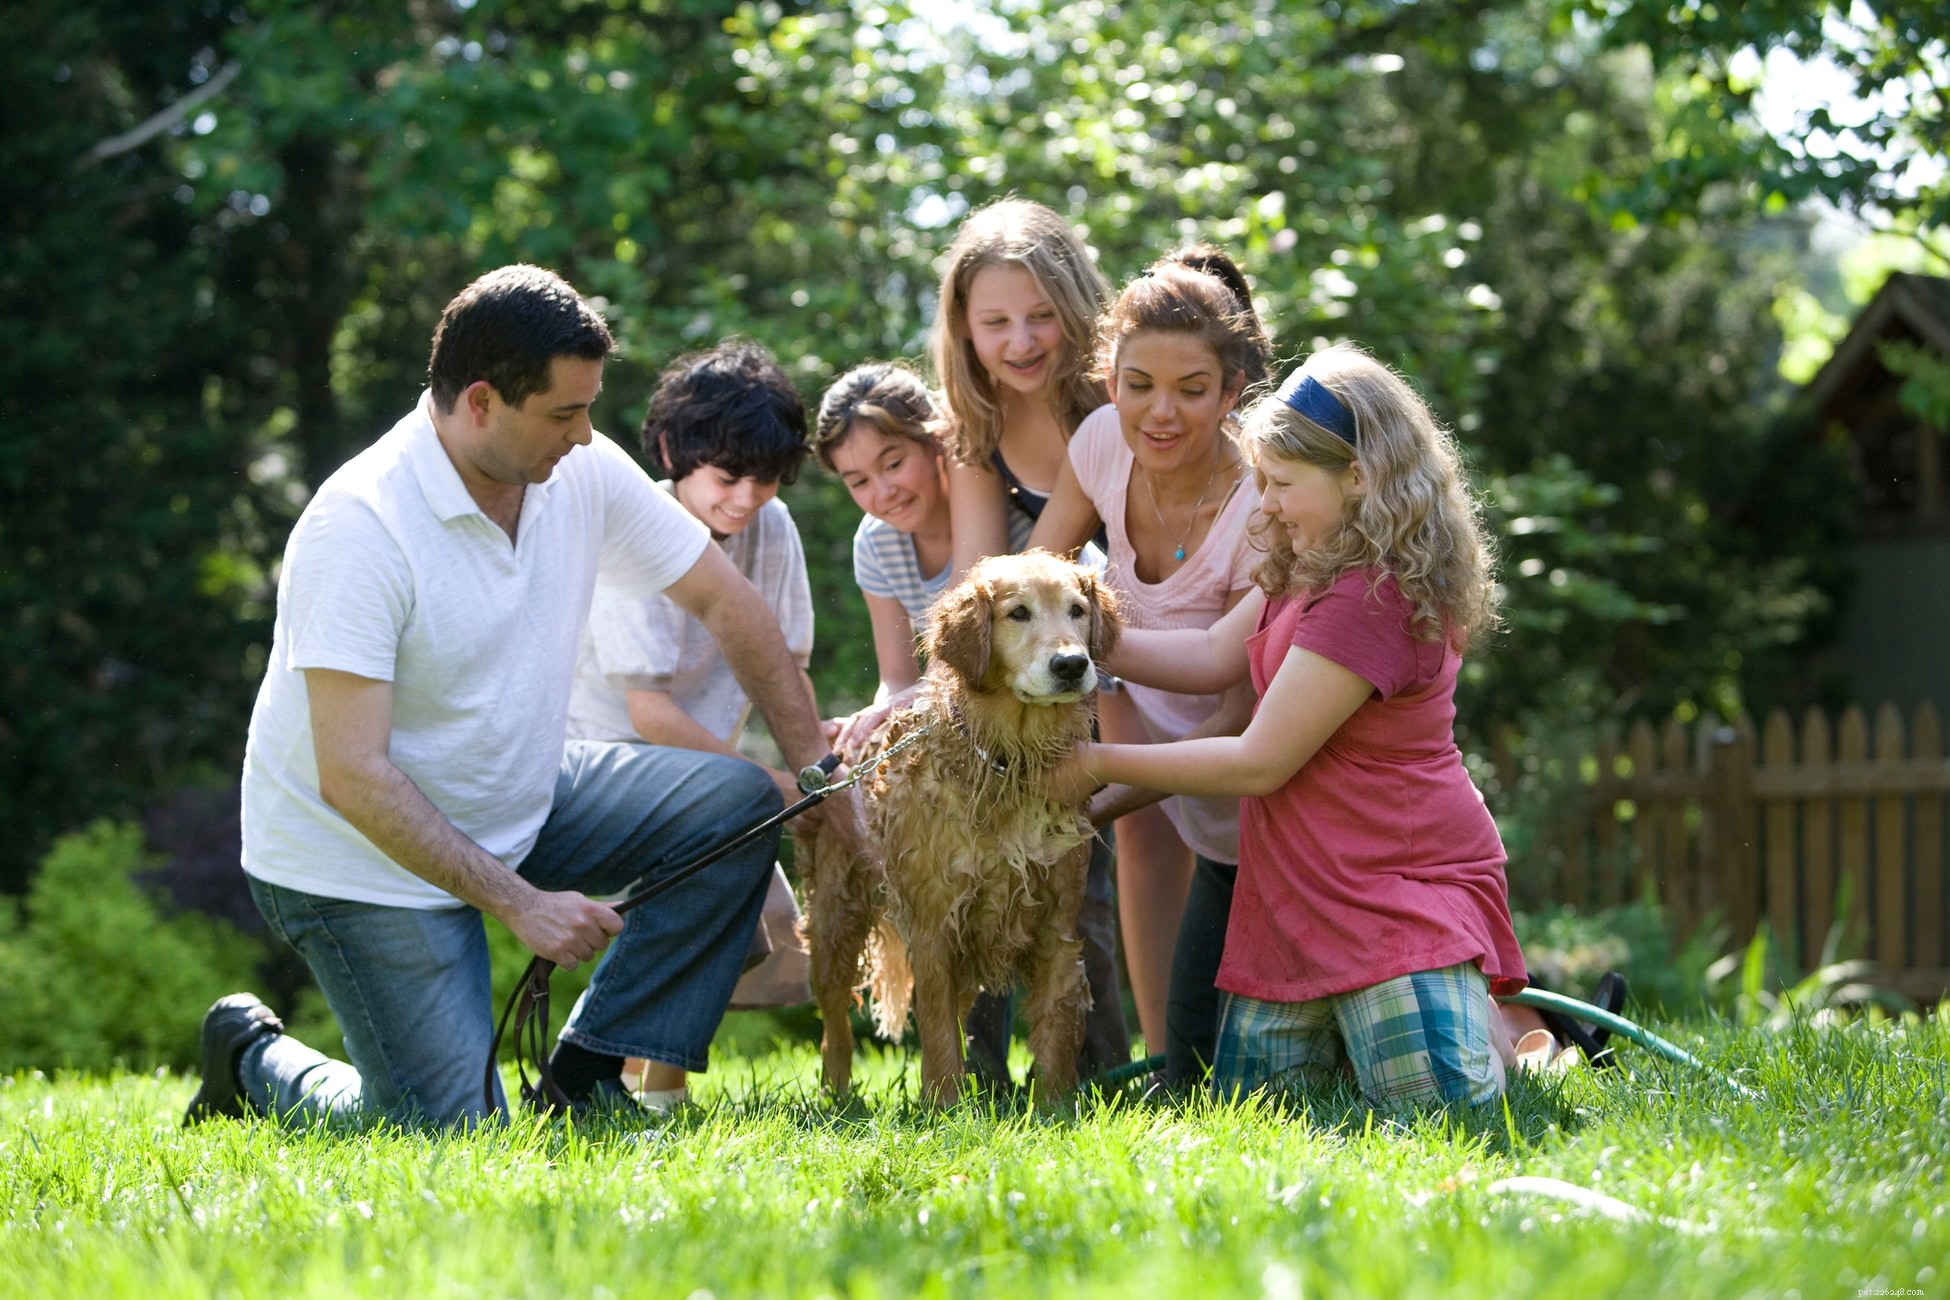 10 забавных занятий на свежем воздухе для собаки и владельца